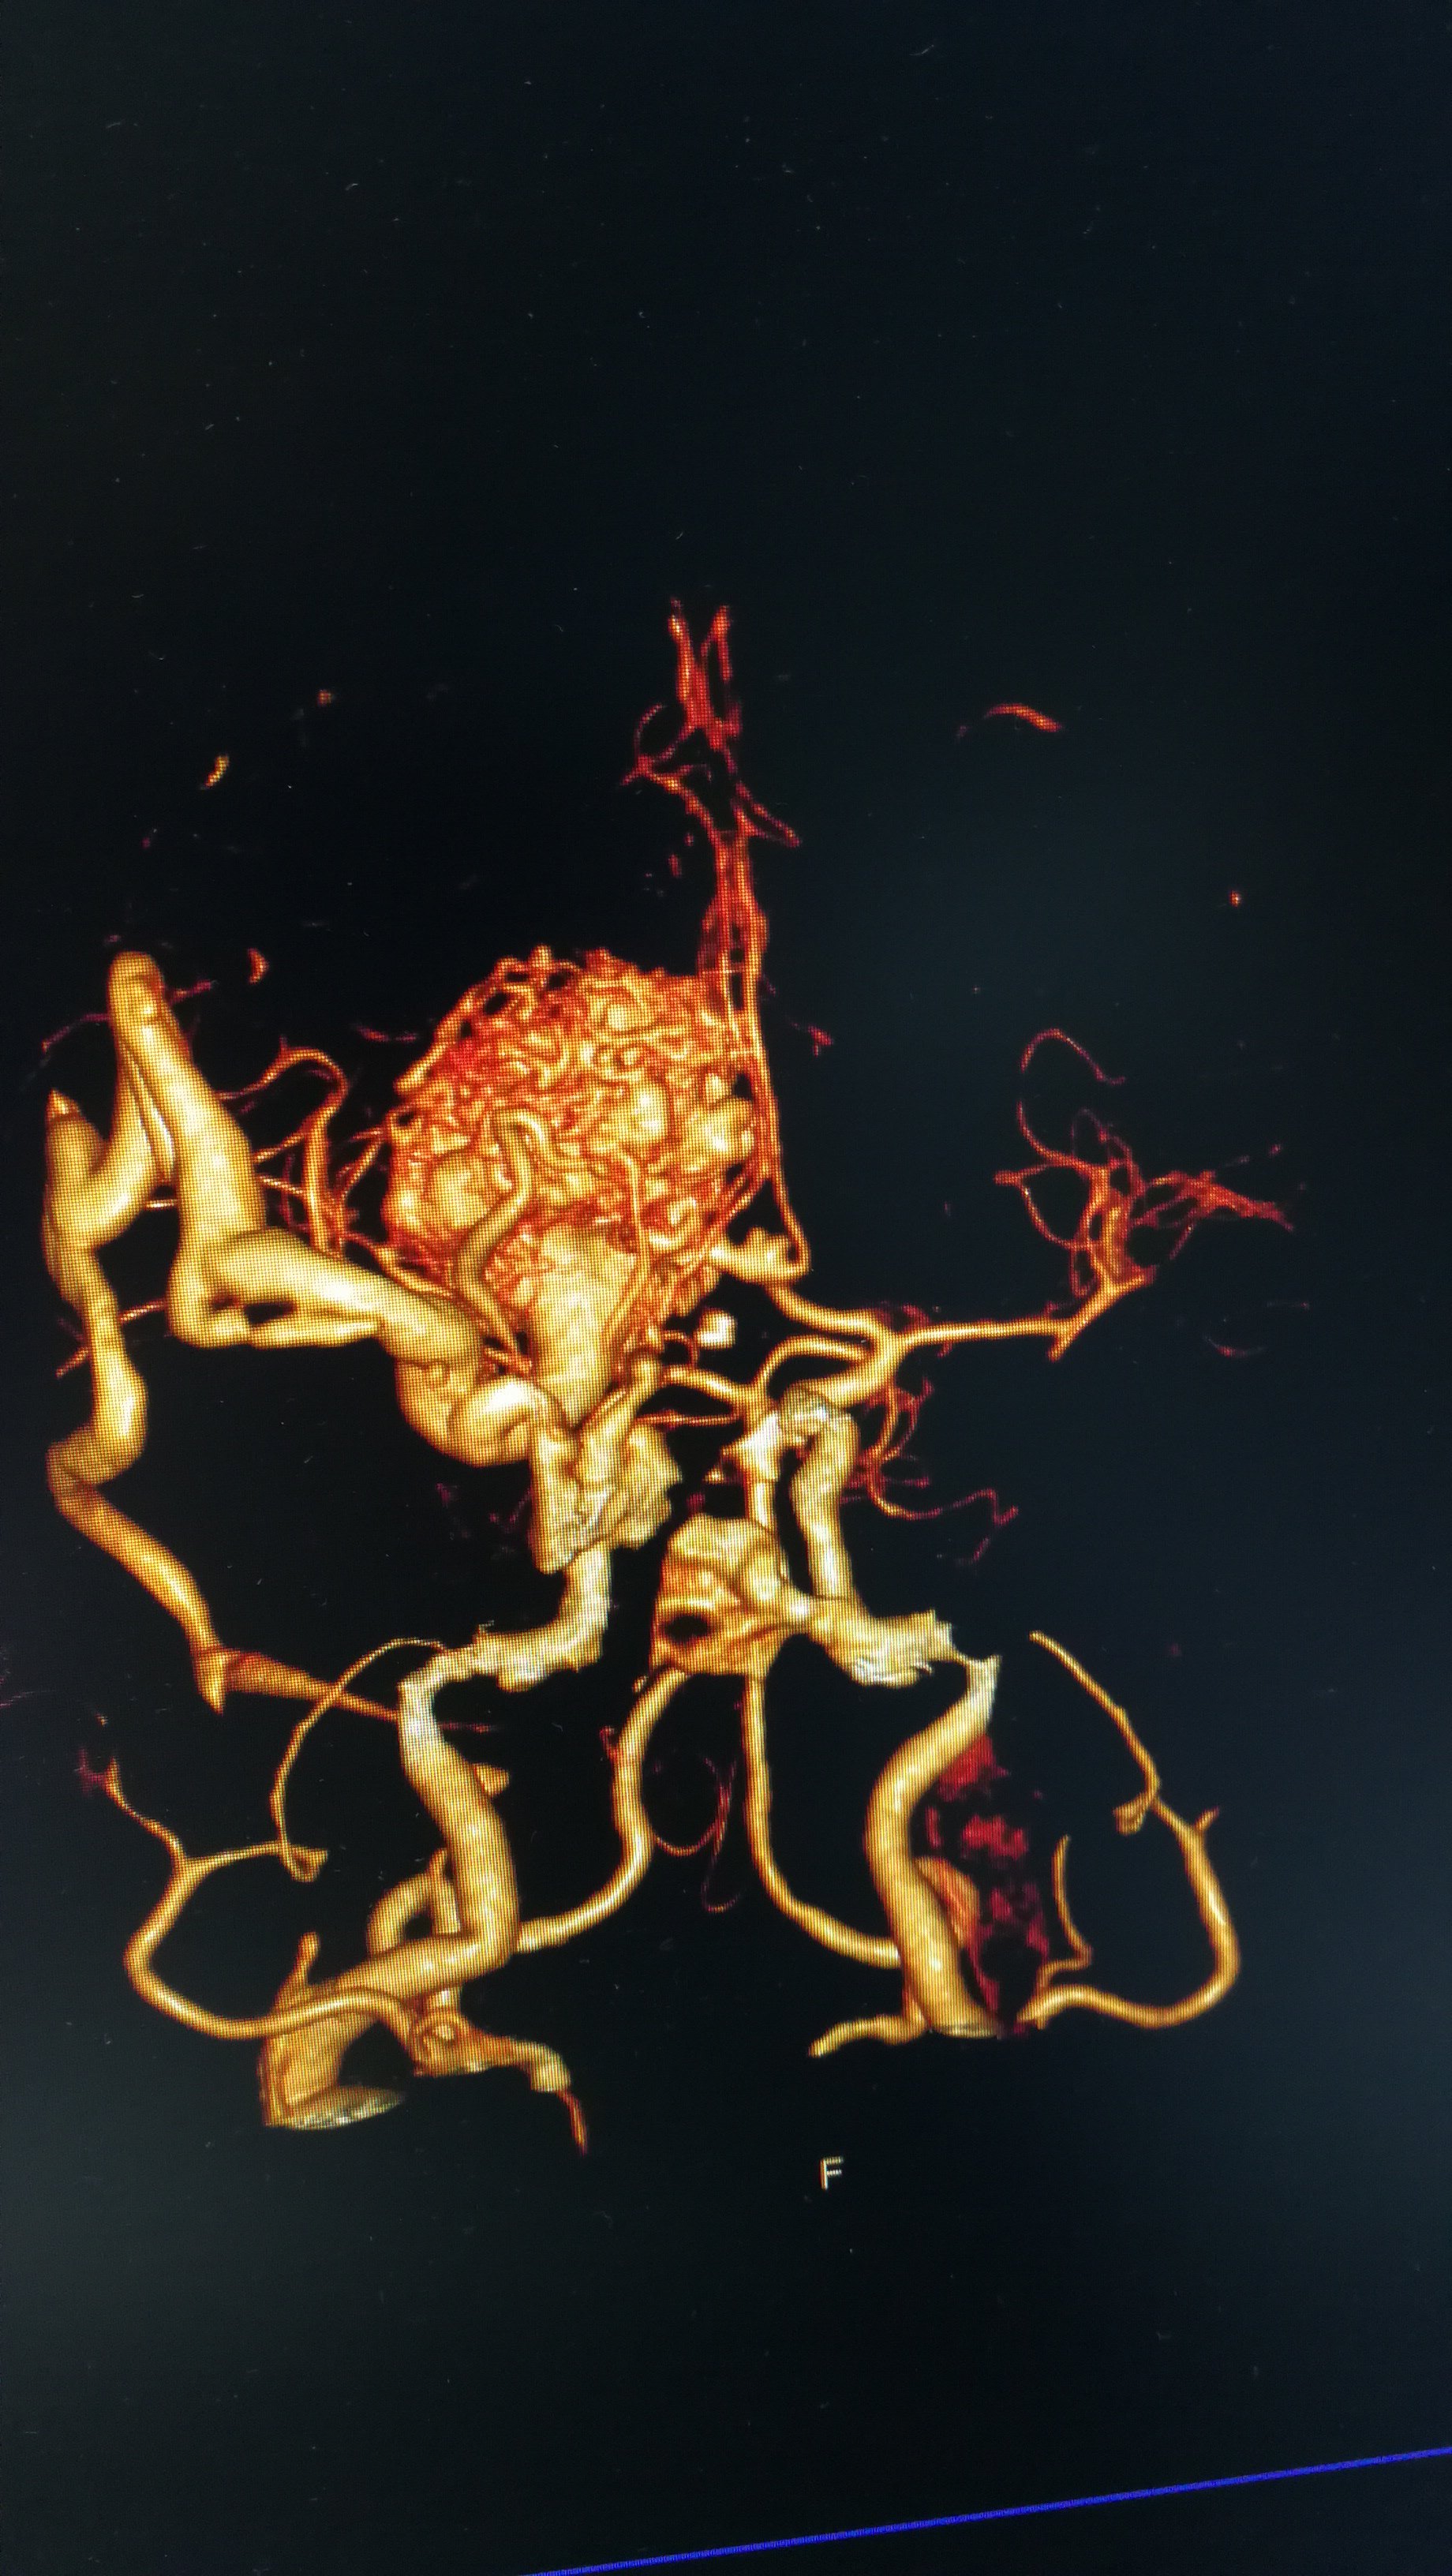 脑血管三维成像图片